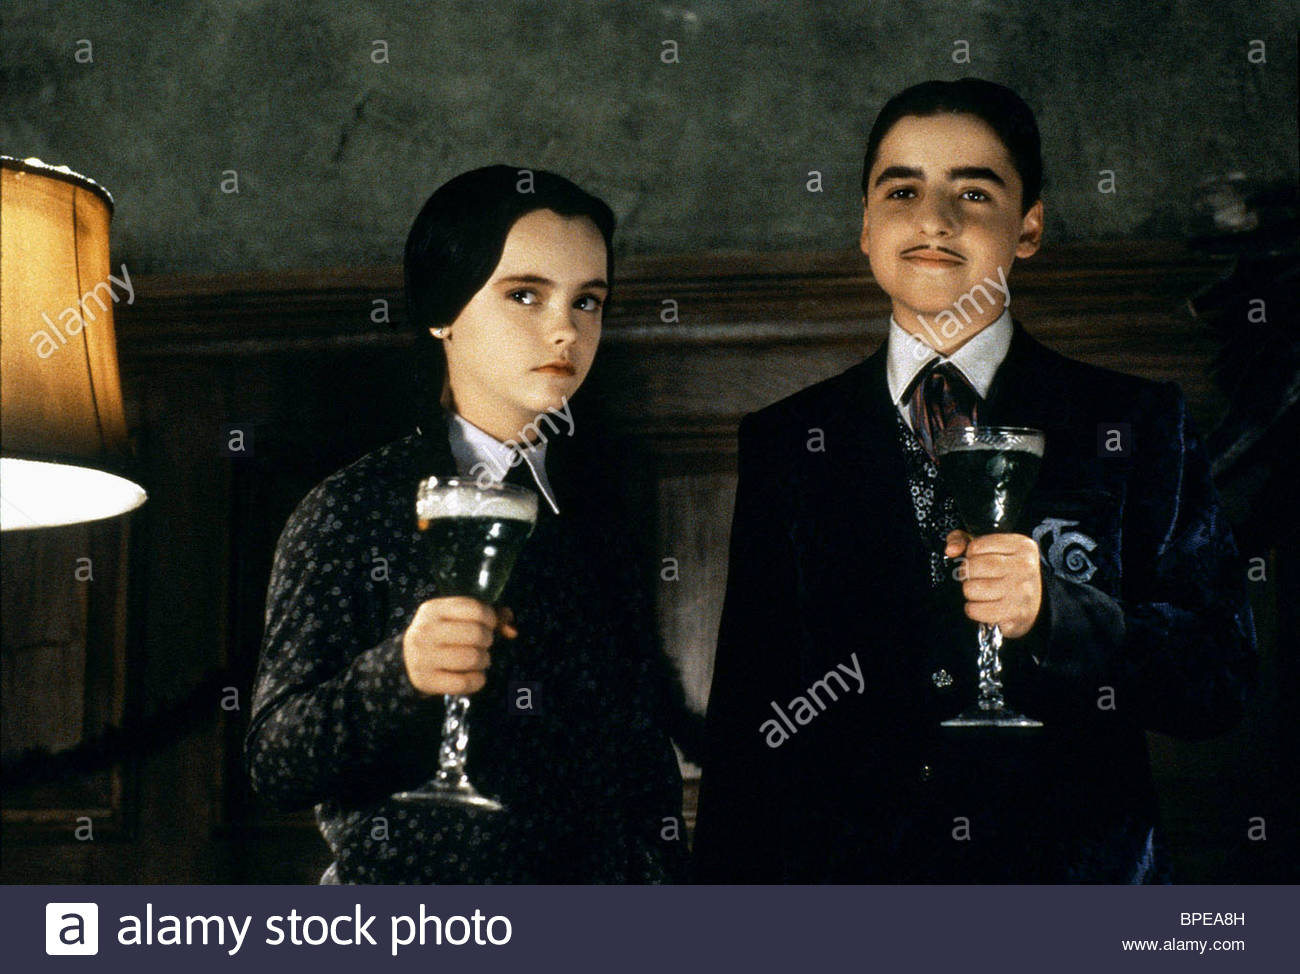 Addams Family Values #21